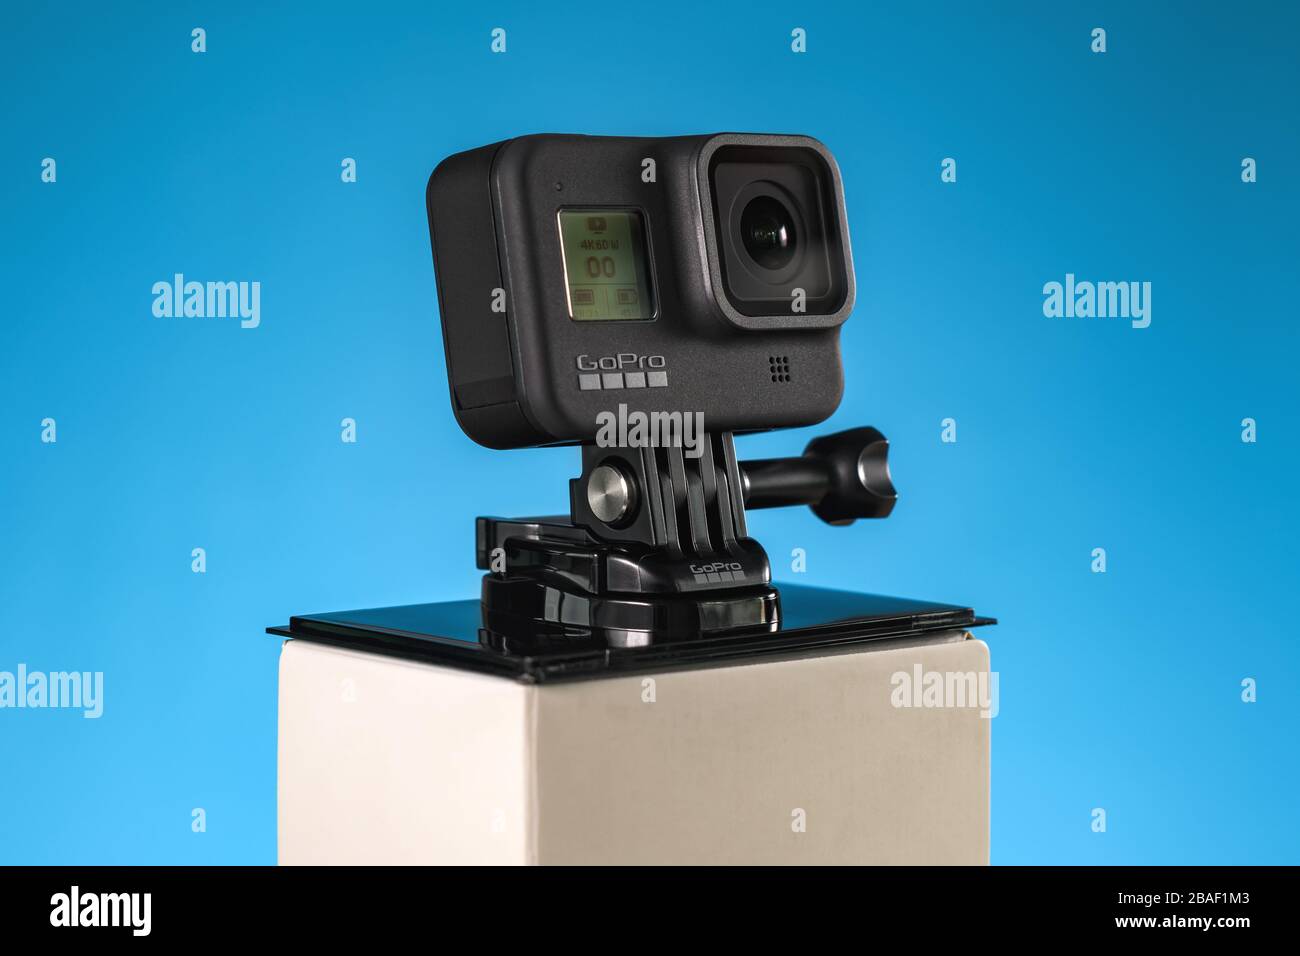 NOVI SAD, SERBIA - FEBBRAIO 21. 2020: Videocamera GoPro Hero 8 Black in grado di registrare filmati in 4K a 60 fps, editoriale illustrativo Foto Stock